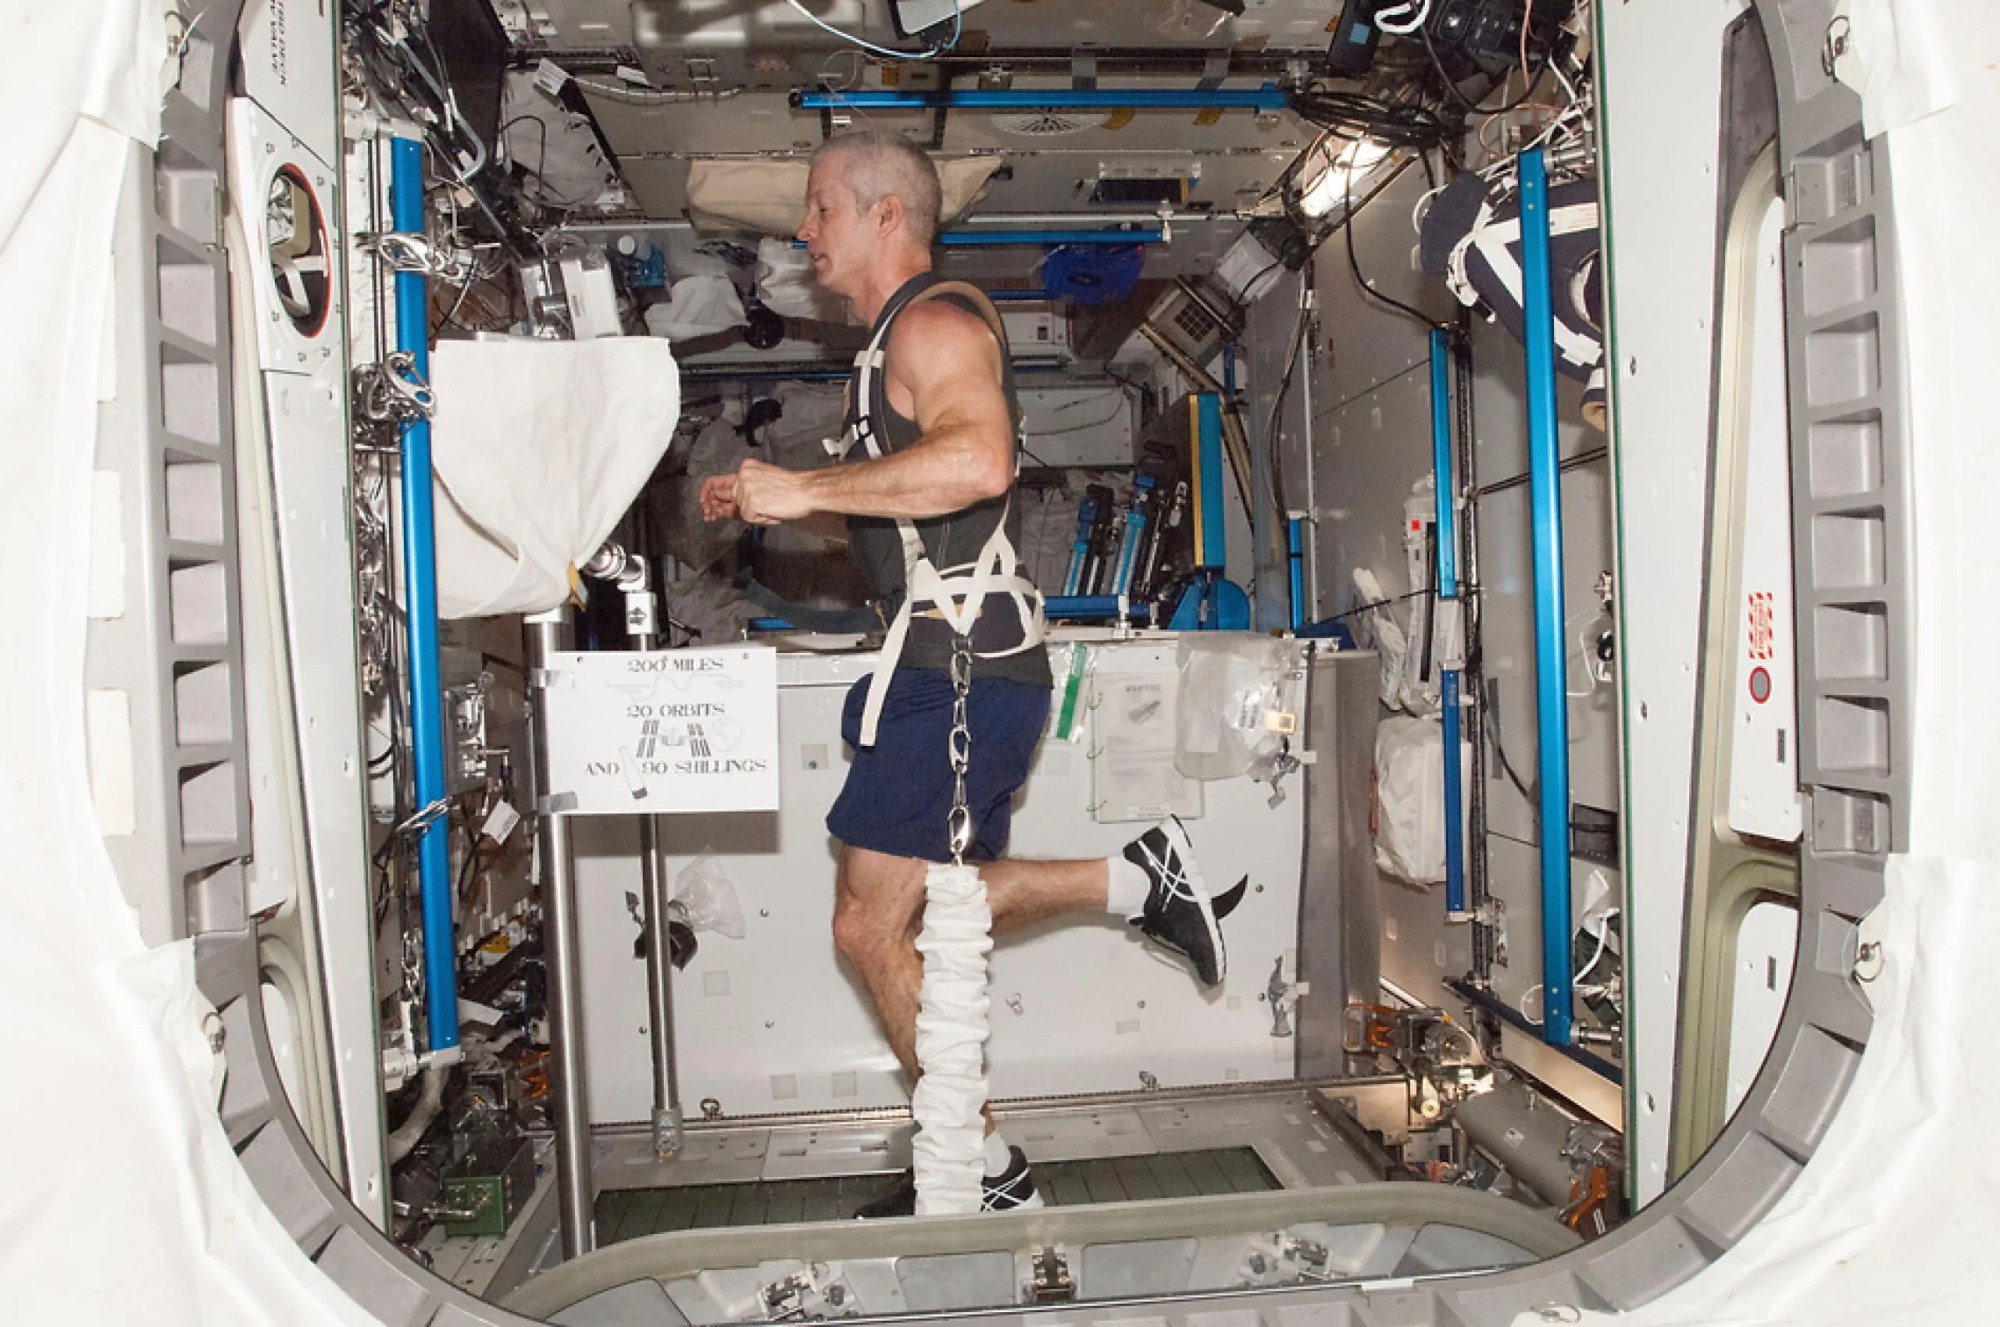 El astronauta de la NASA Steve Swanson se ejercita en la cinta de correr de resistencia externa con soporte de carga operacional combinada (COLBERT, por sus siglas en inglés). Créditos: NASA